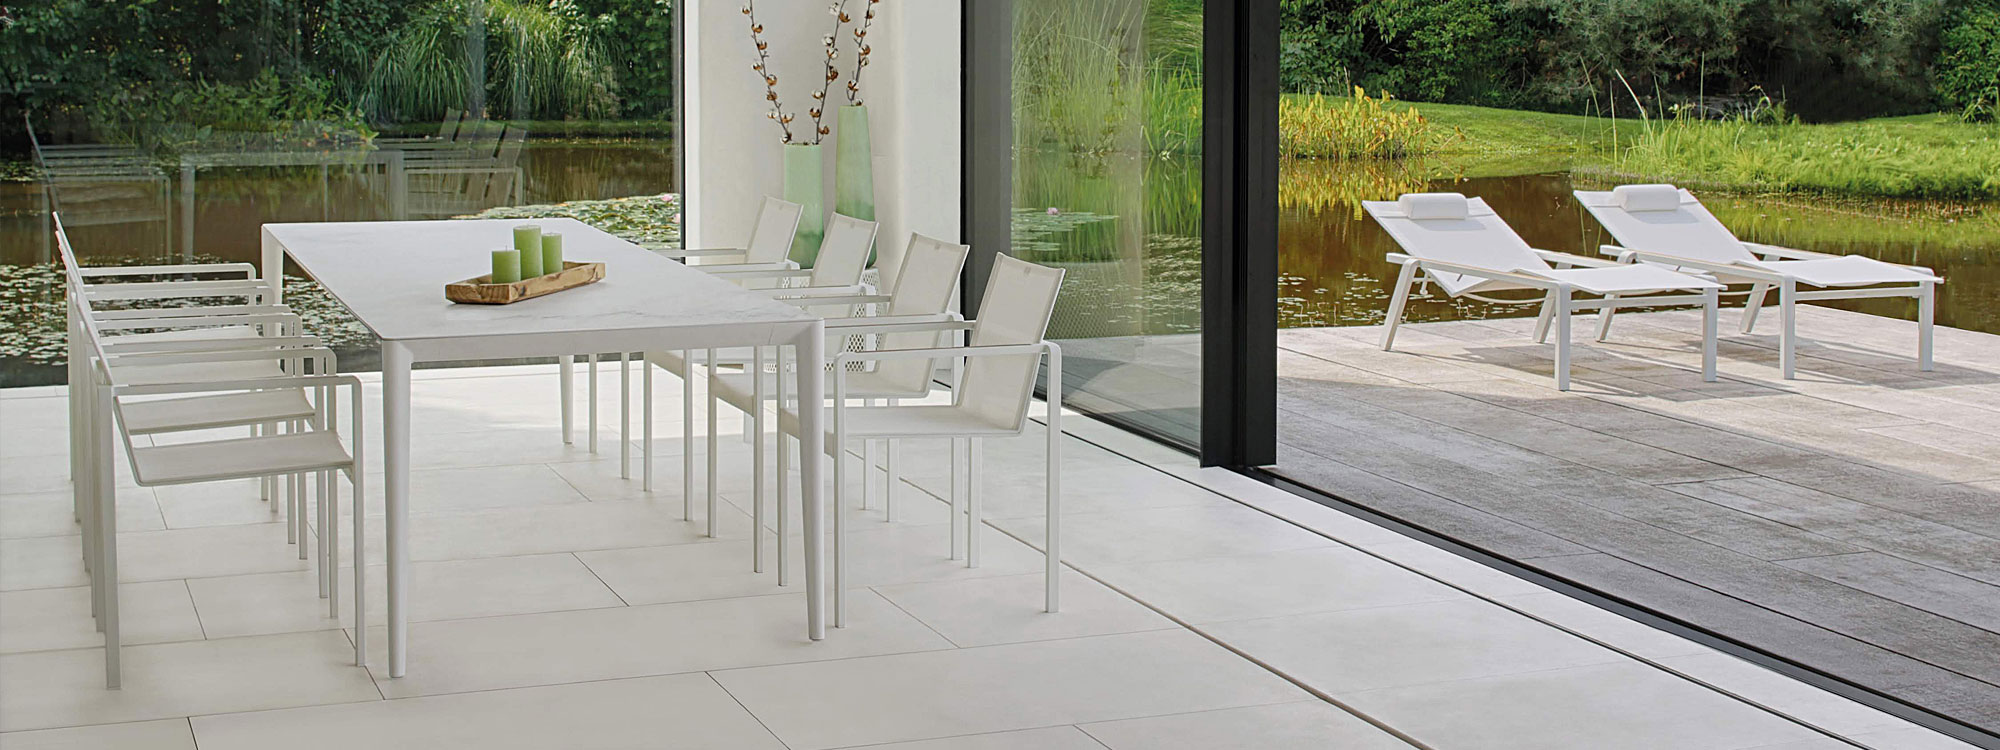 Bianco Statuario ceramic U-nite table & white Alura garden chairs in a garden room.